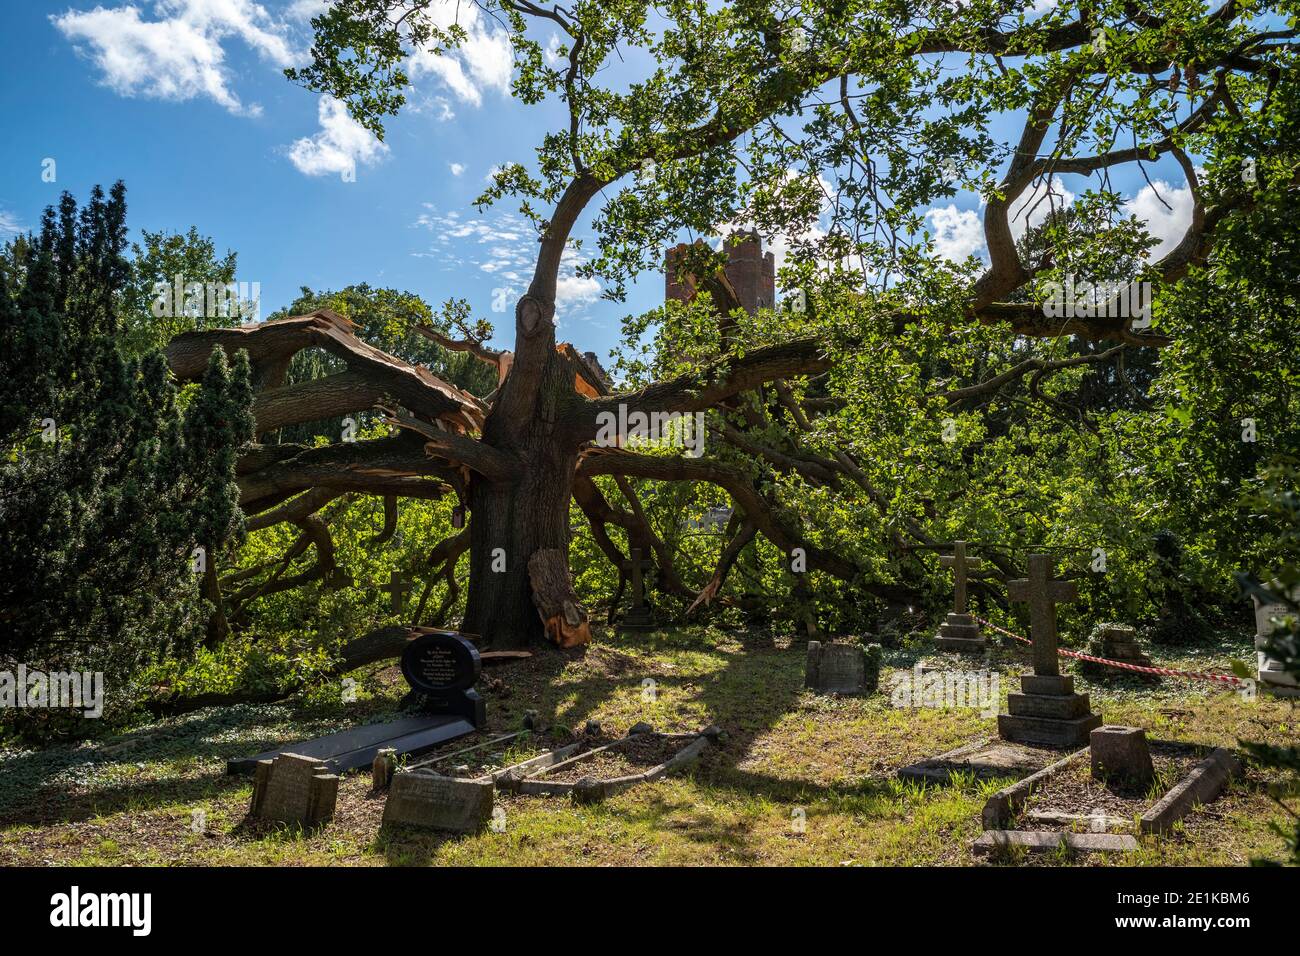 Danneggiato l'antico albero di quercia inglese caduto, Quercus, nel cortile di una chiesa parrocchiale tradizionale dopo un periodo di tempesta vento nella Grande Londra, Foto Stock